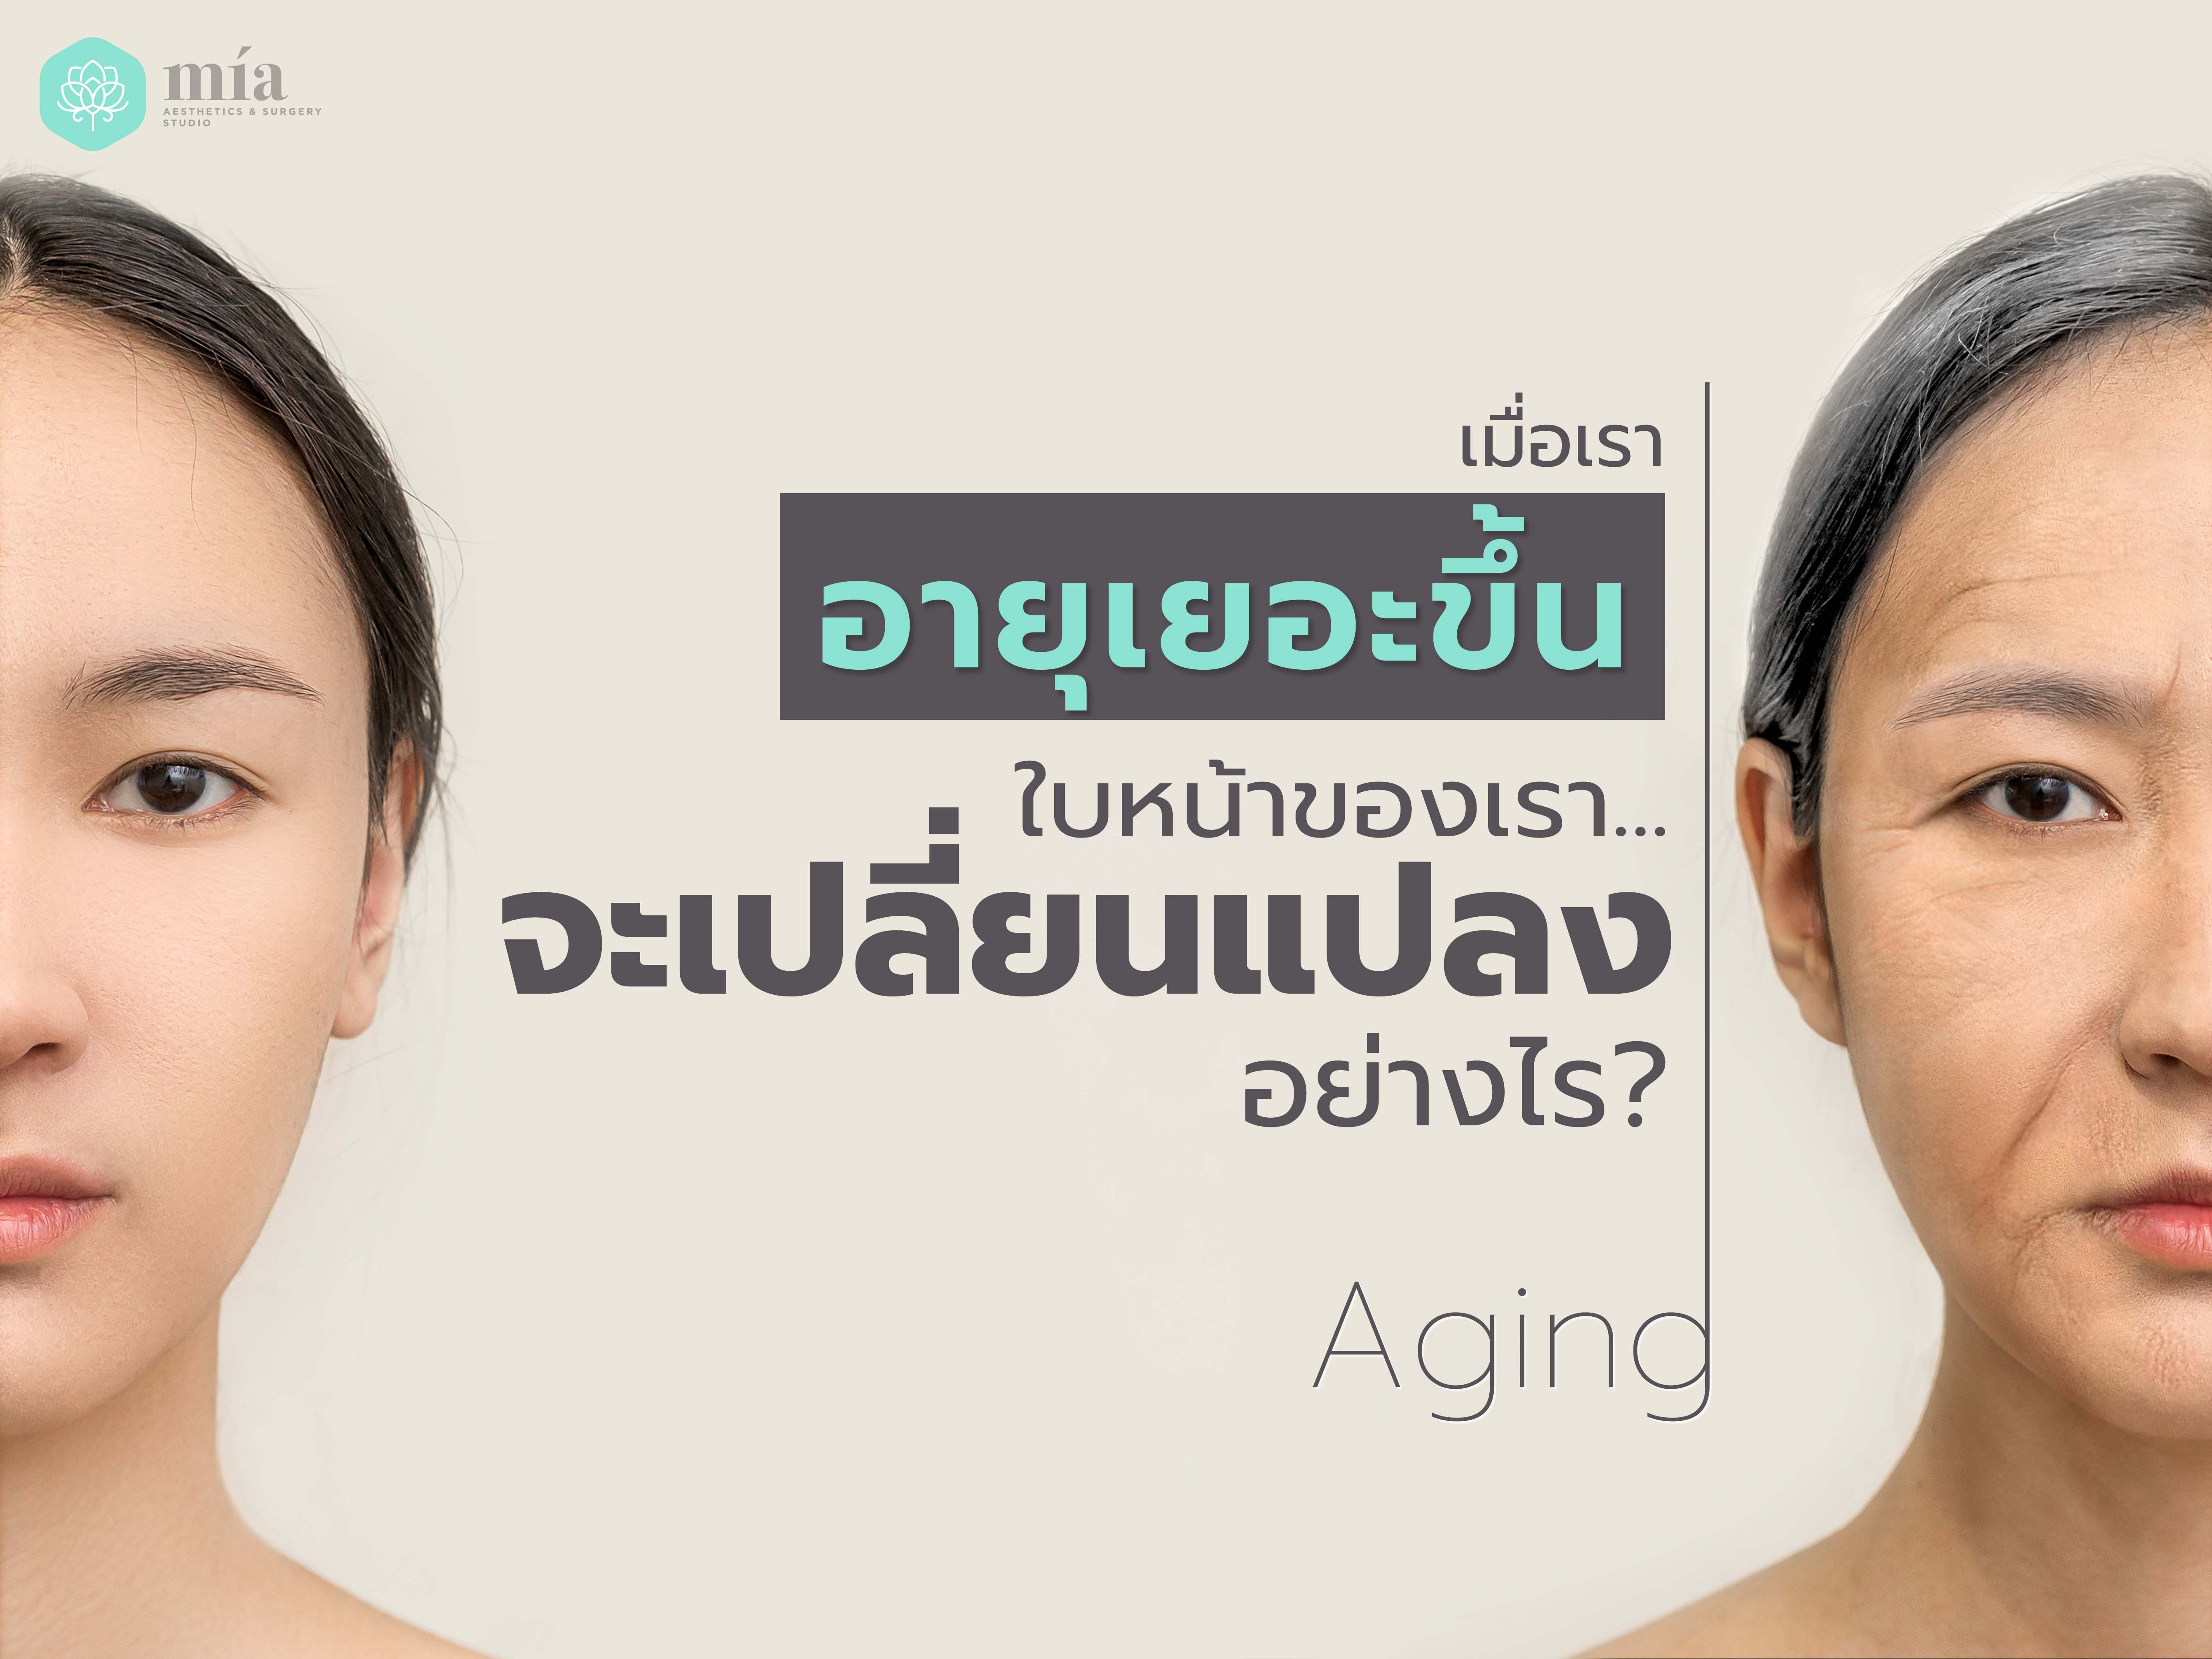 เมื่อเราอายุเยอะขึ้น ใบหน้าของเราจะเปลี่ยนแปลงอย่างไร  ทางป้องกันหรือชะลอที่ดีที่สุดมีอะไรบ้าง 